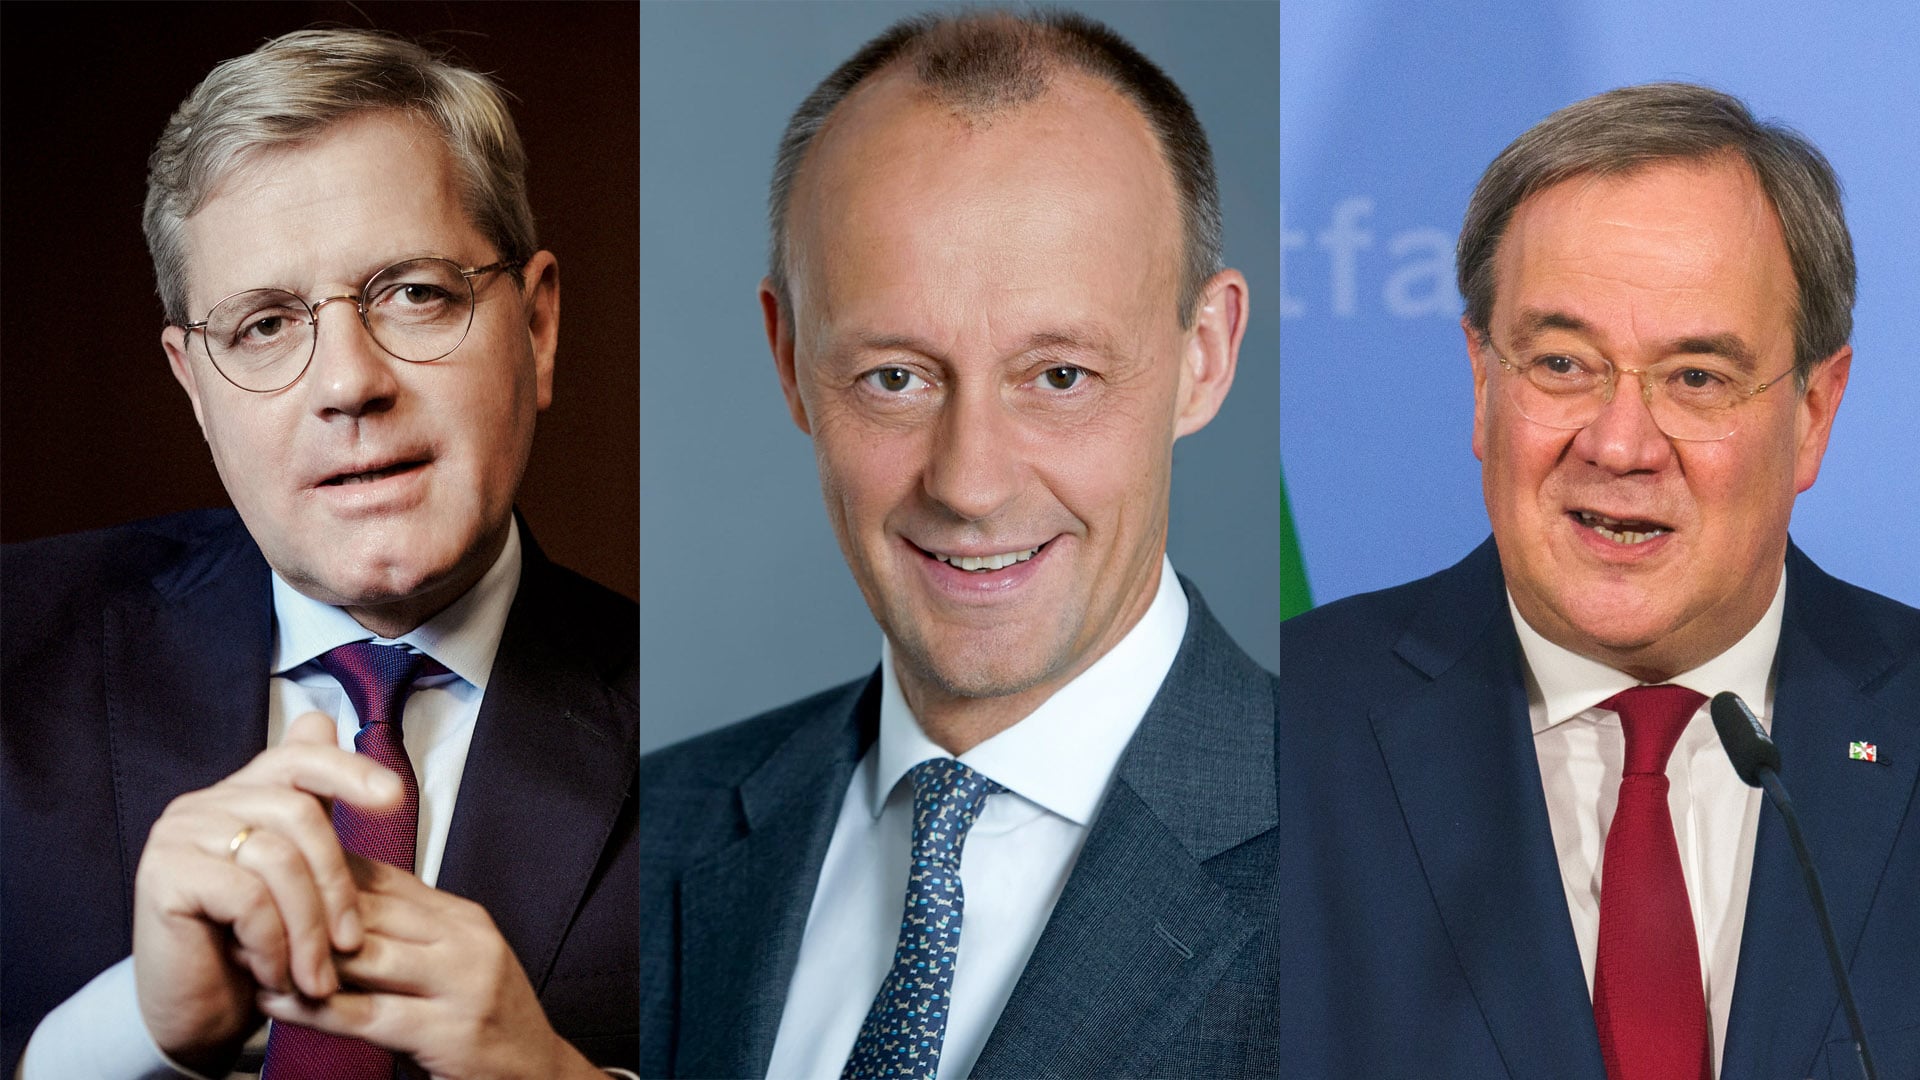 Norbert Röttgen, Friedrich Merz und Armin Laschet bewerben sich um den Vorsitz der CDU. Nach der digitalen Abstimmung am Samstag soll eine Briefwahl das Ergebnis rechtsverbindlich bestätigen. Das soll am 22. Januar feststehen.